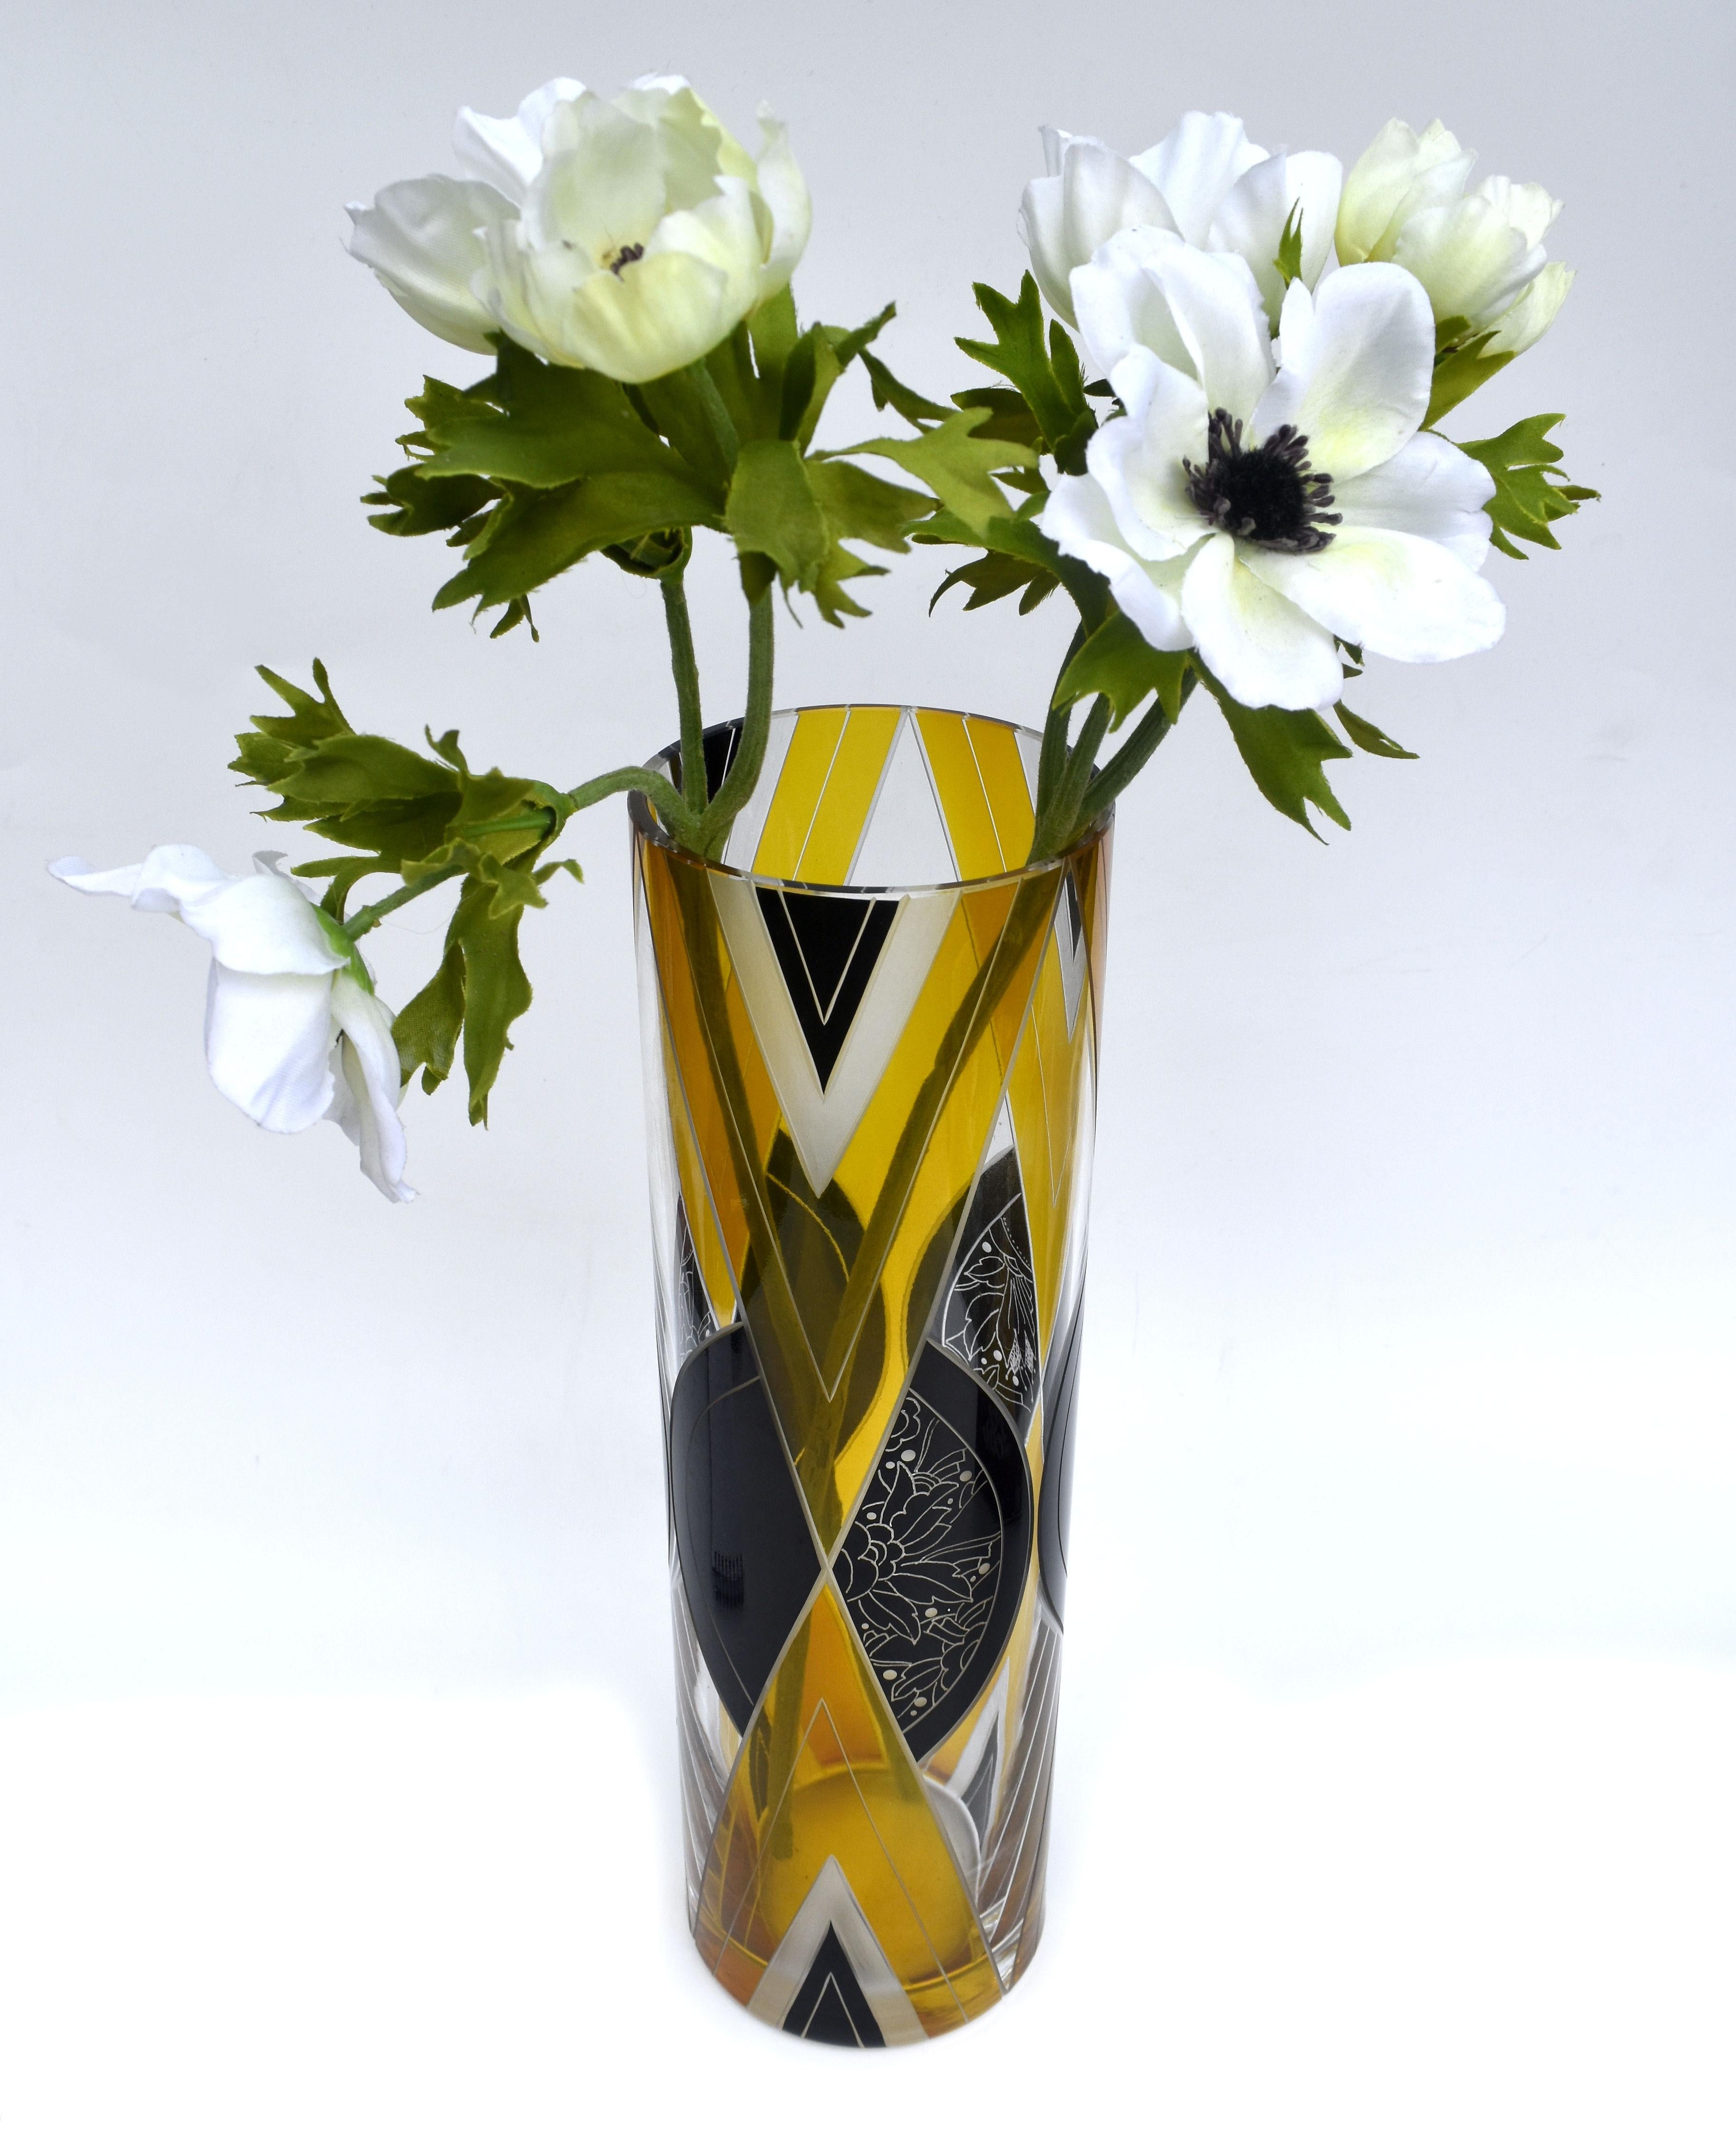 Eine außergewöhnliche Art-déco-Glasvase aus den 1930er Jahren aus der Tschechischen Republik. Stark verziert und mit prächtigem geometrischen Dekor. Hohe Qualität mit den schönsten Details und keine Schäden. Der Körper der Vase ist zylindrisch und